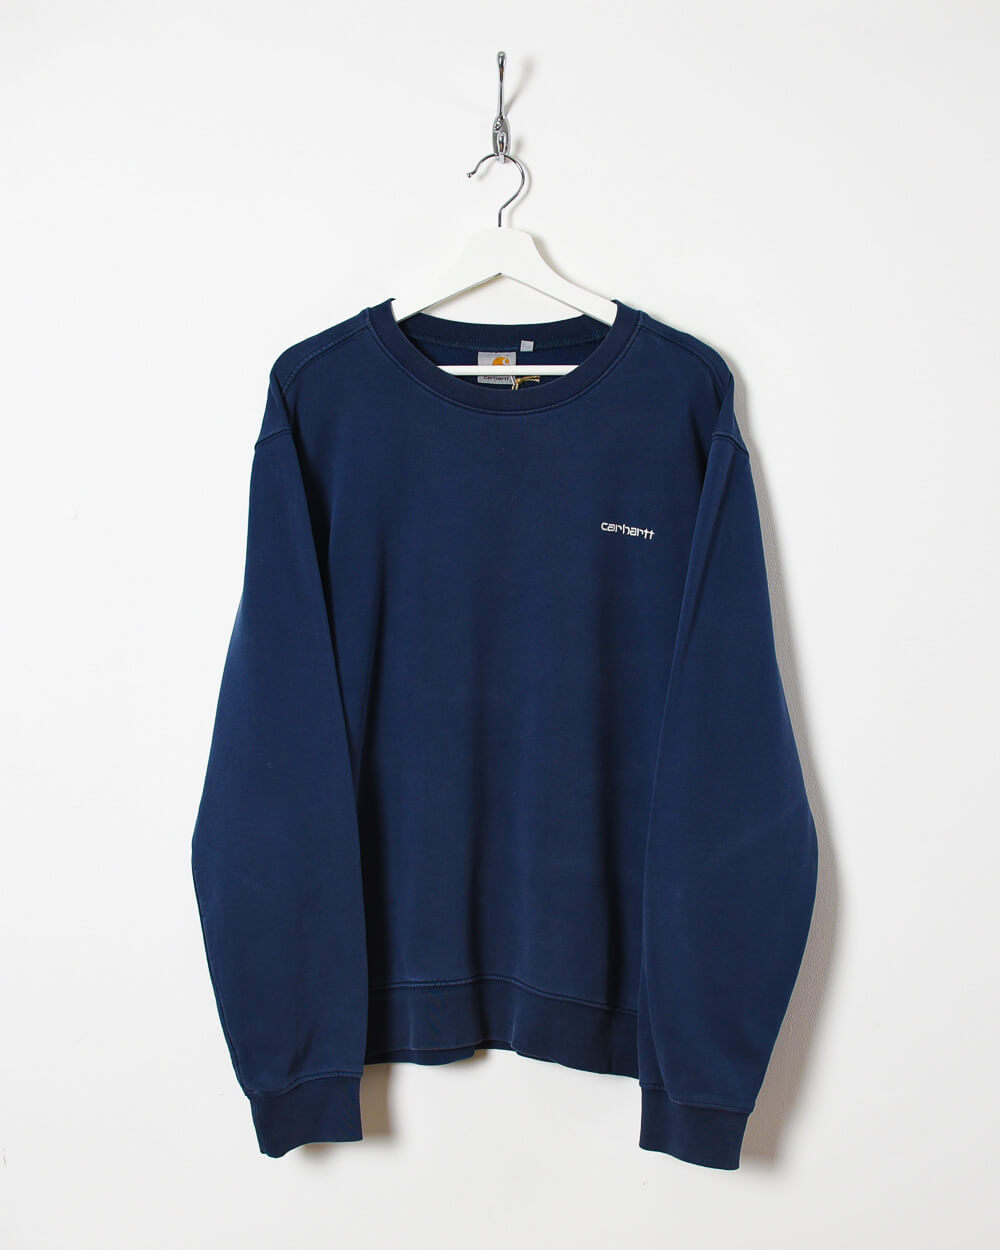 Navy Carhartt Sweatshirt - Medium